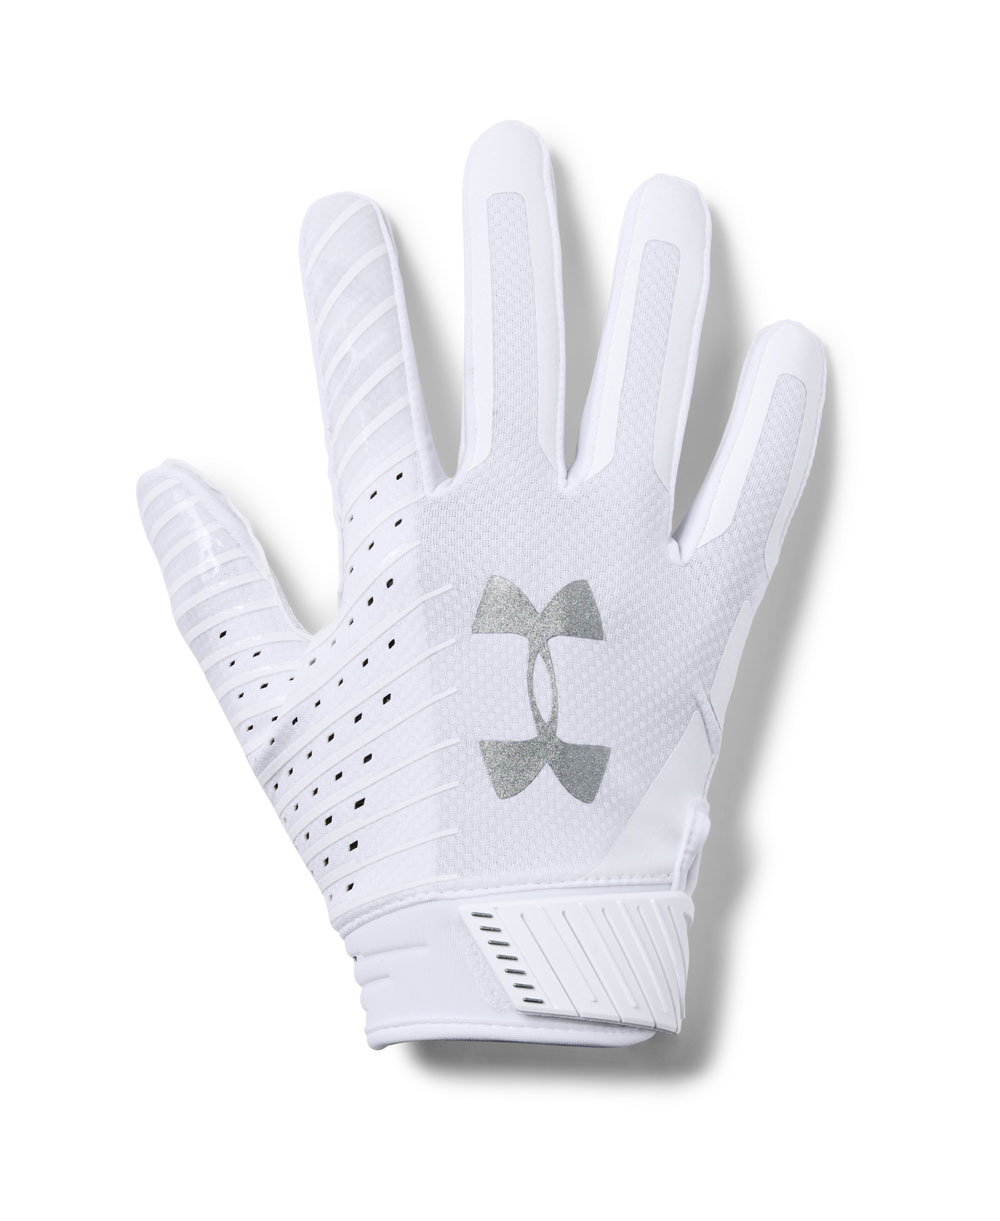 spotlight gloves